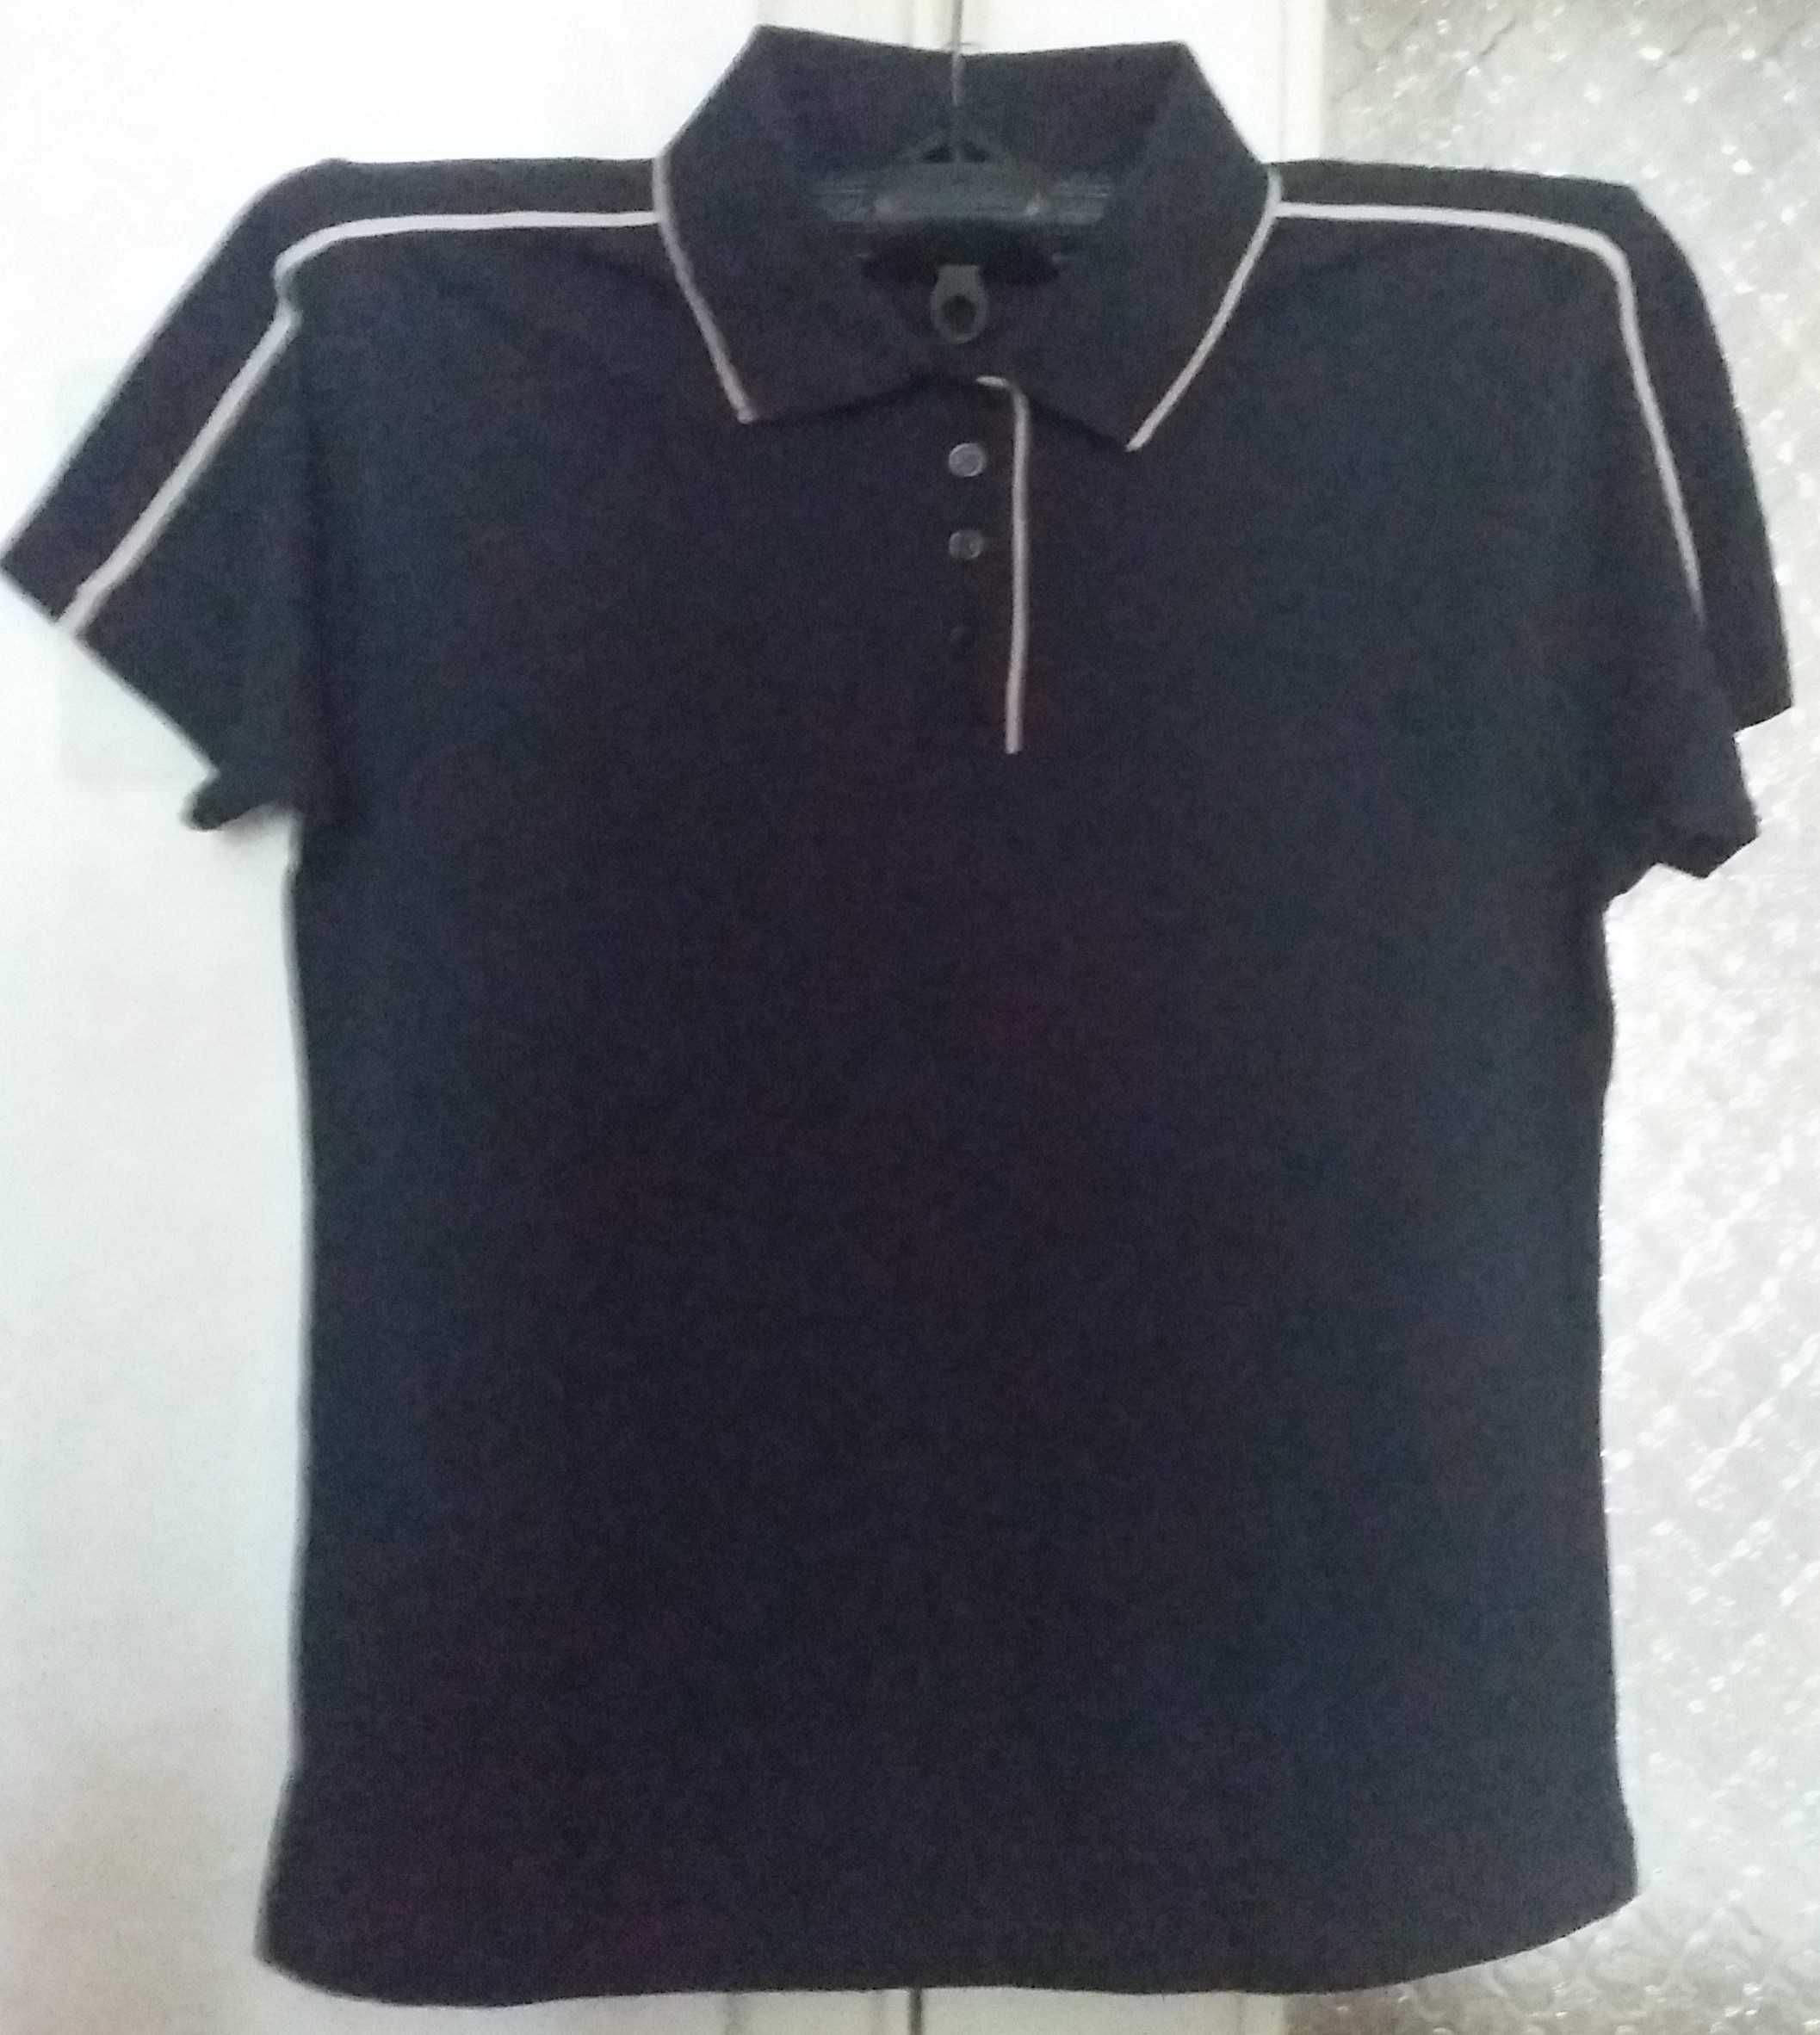 Женская новая черная футболка поло HOLLISTER р.М (50-52) 160грн